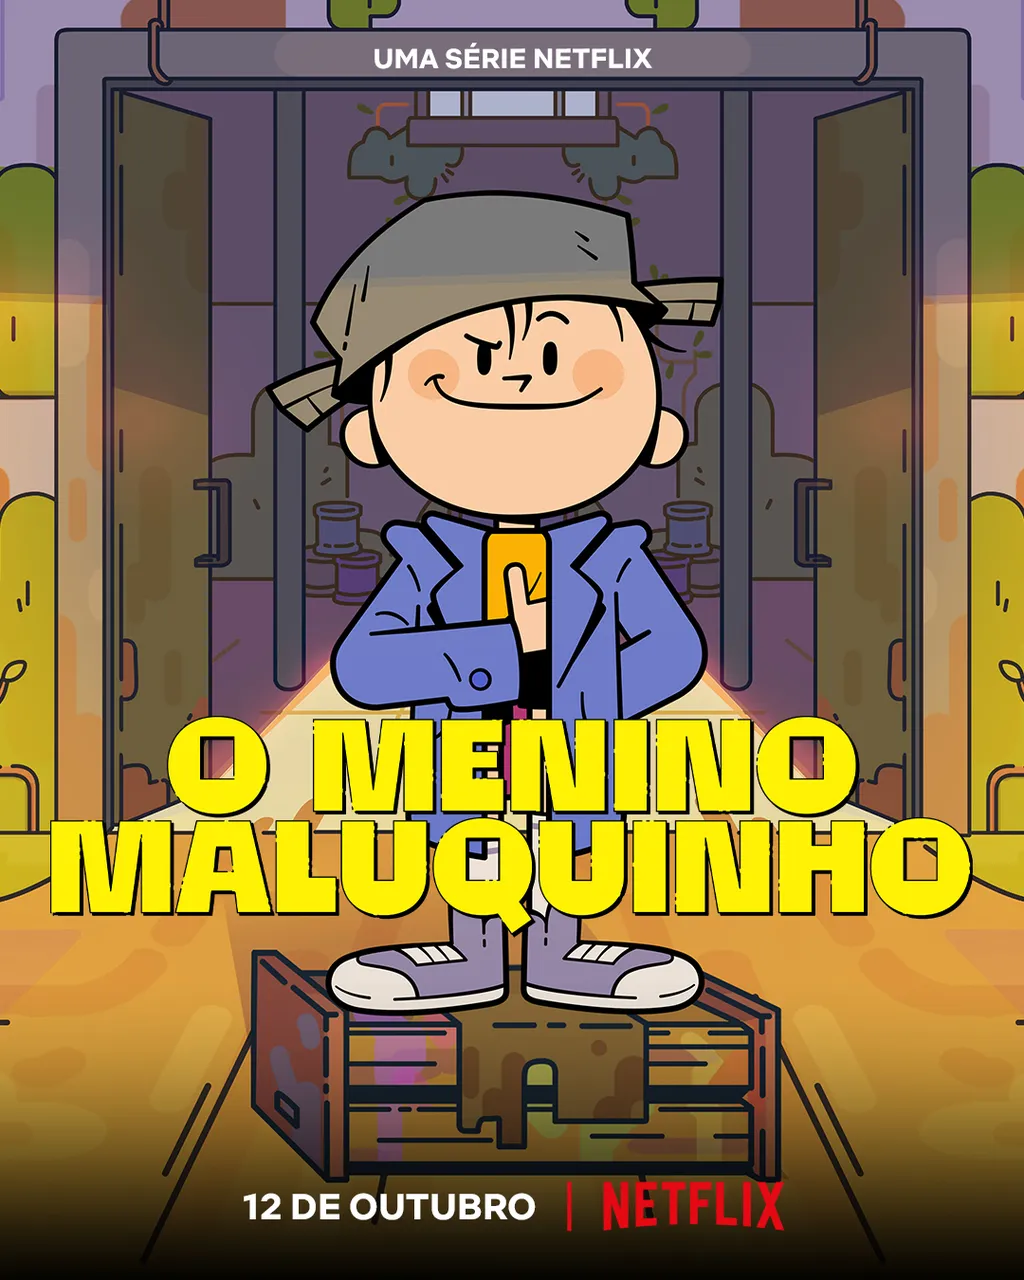 O Menino Maluquinho estreia na Netflix no dia 12 de outubro. (Imagem:Divulgação/Netflix)